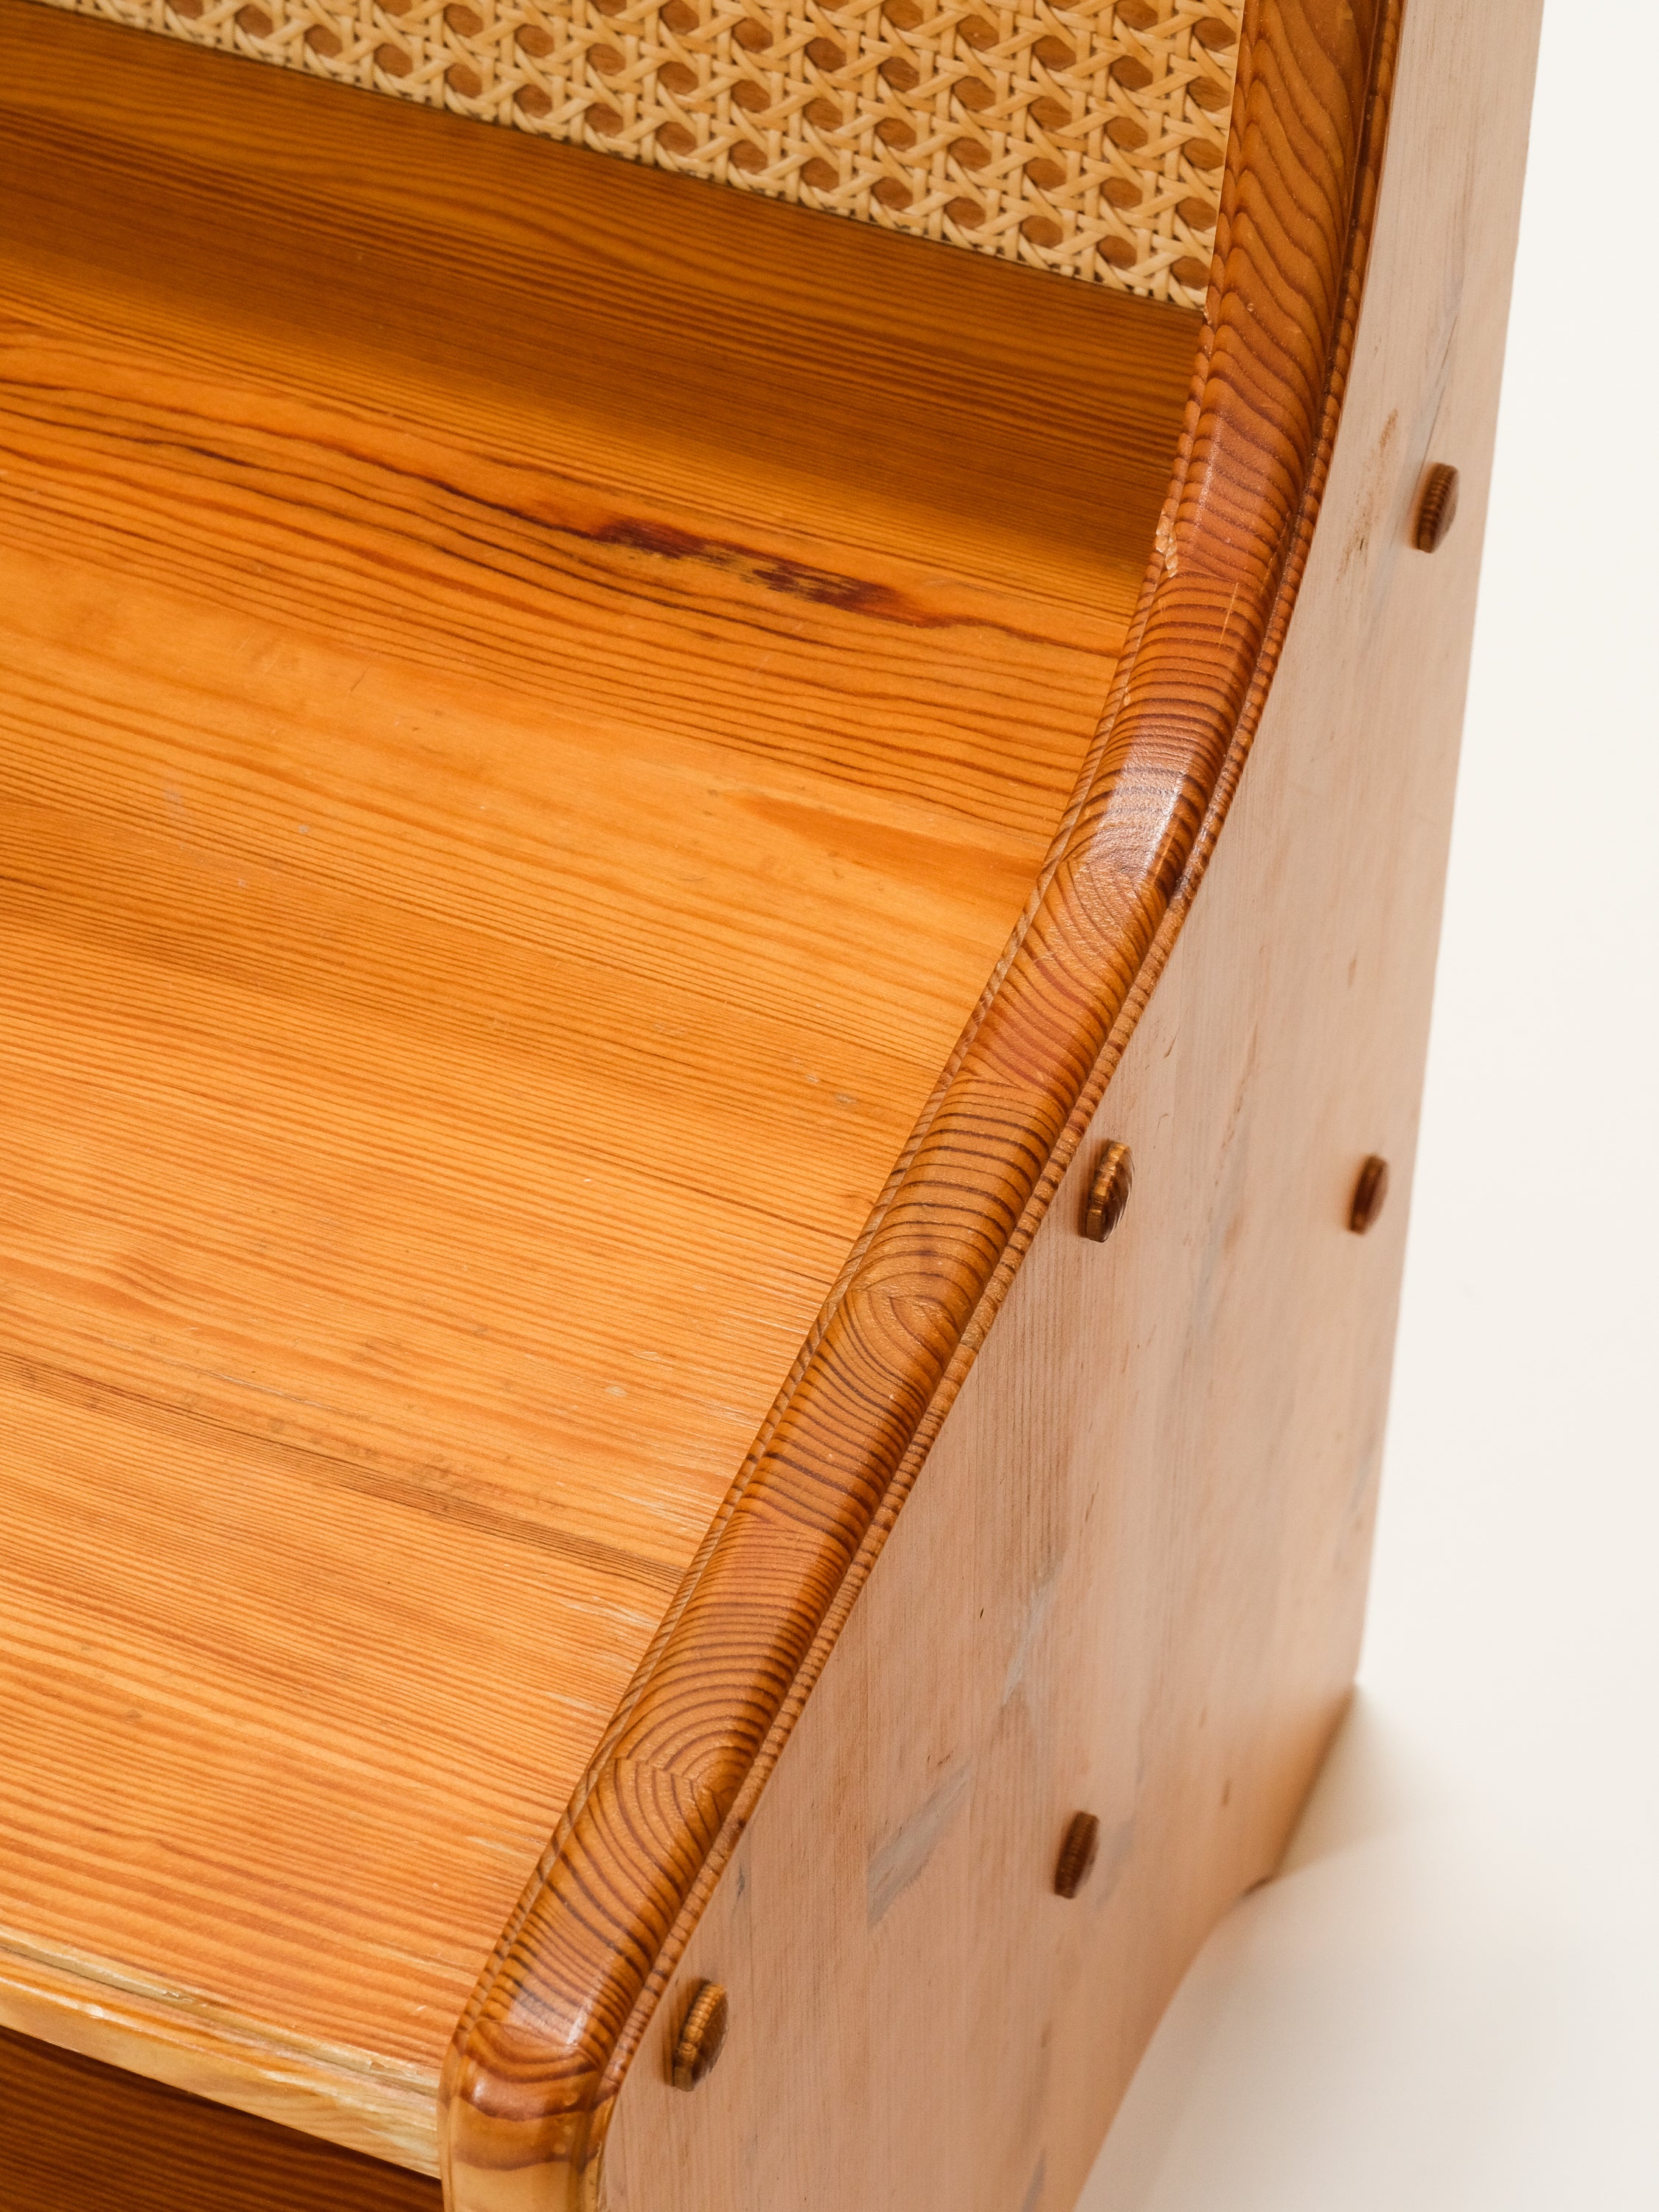 Scandinavian Mid-Century Pine & Rattan Bedside Tables, Set of 2